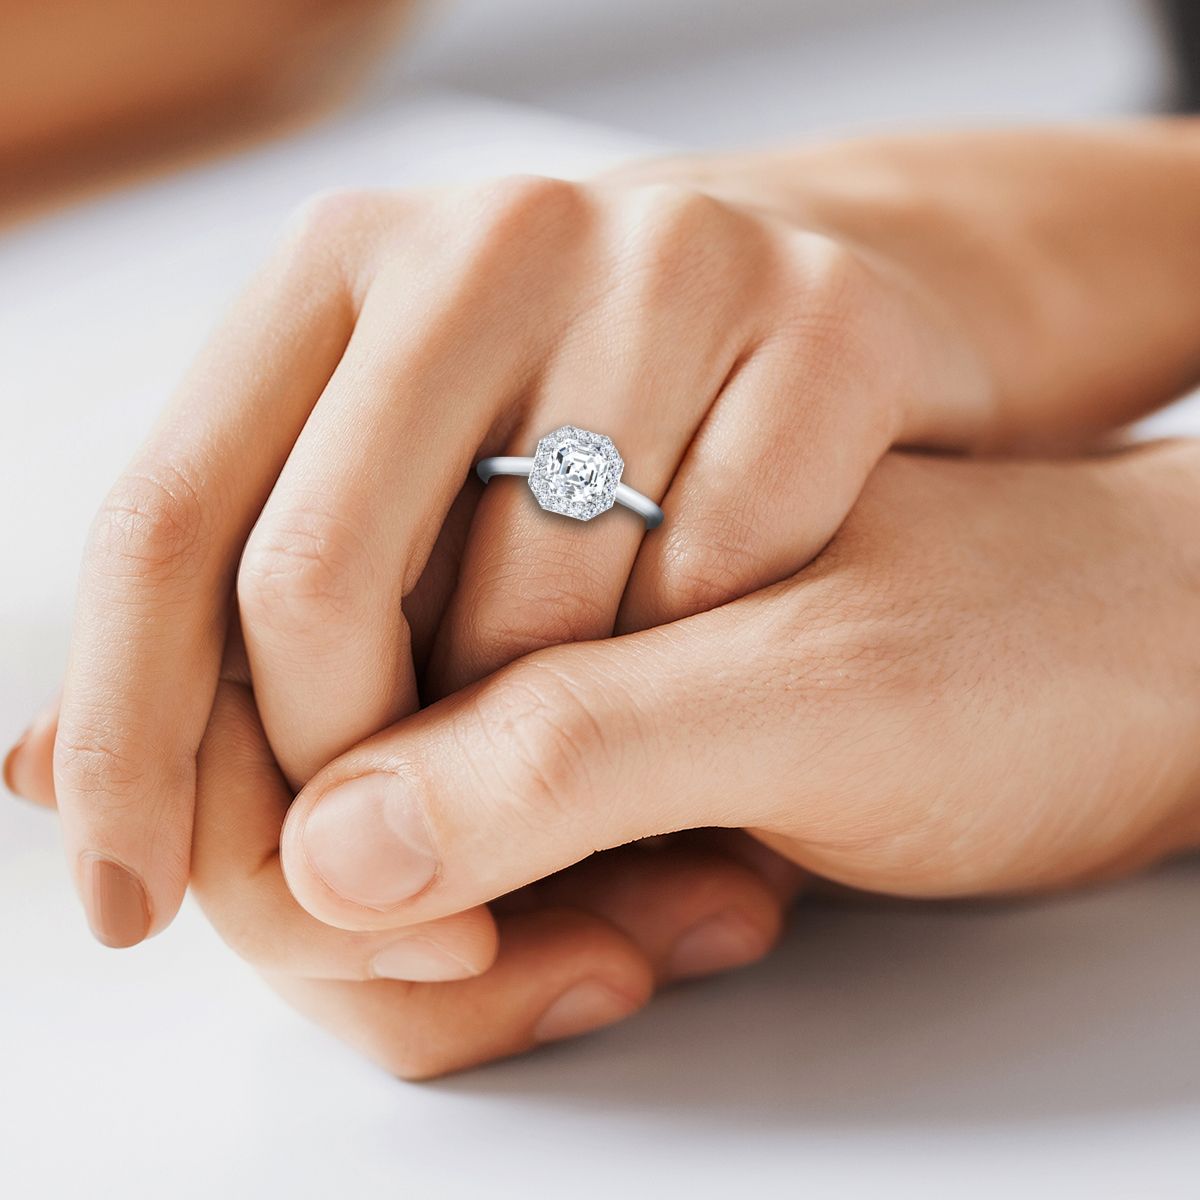 Platinum Asscher Cut Diamond Shared Prong Halo Engagement Ring -1/5ctw